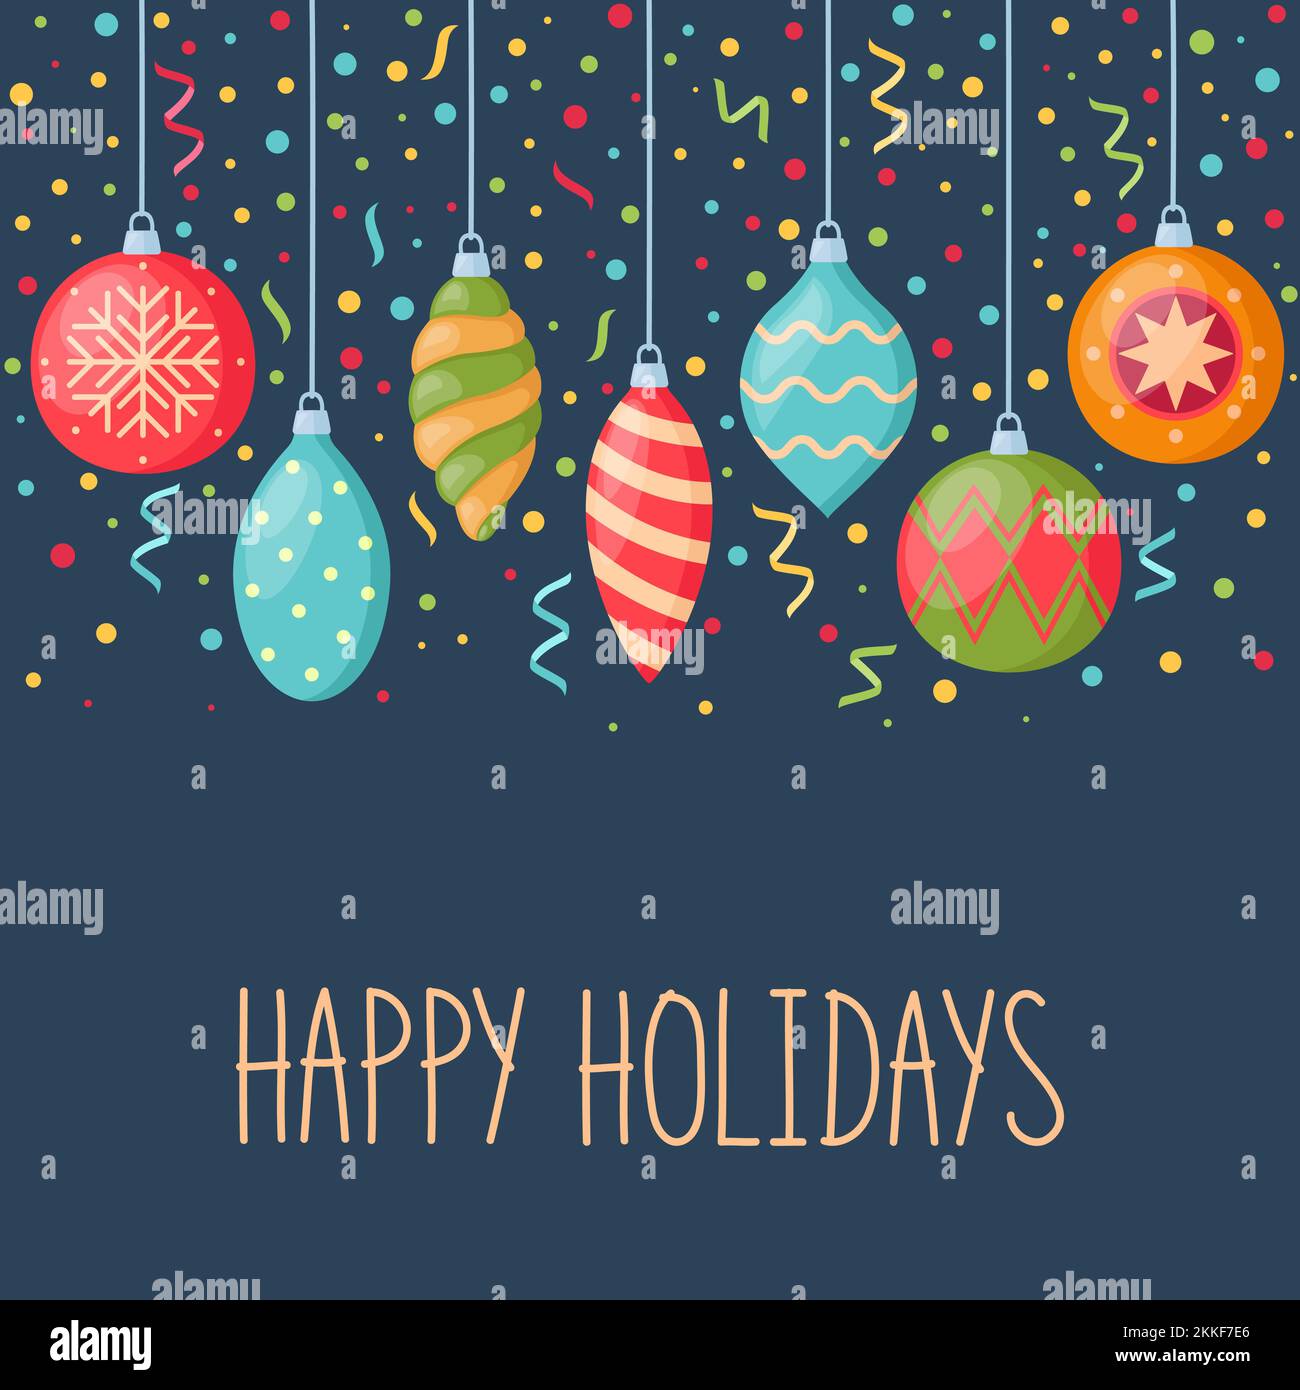 Weihnachts- und Neujahrskarte mit hängenden Dekorationen für weihnachtsbaum und Konfetti, Vektorgrafik Stock Vektor